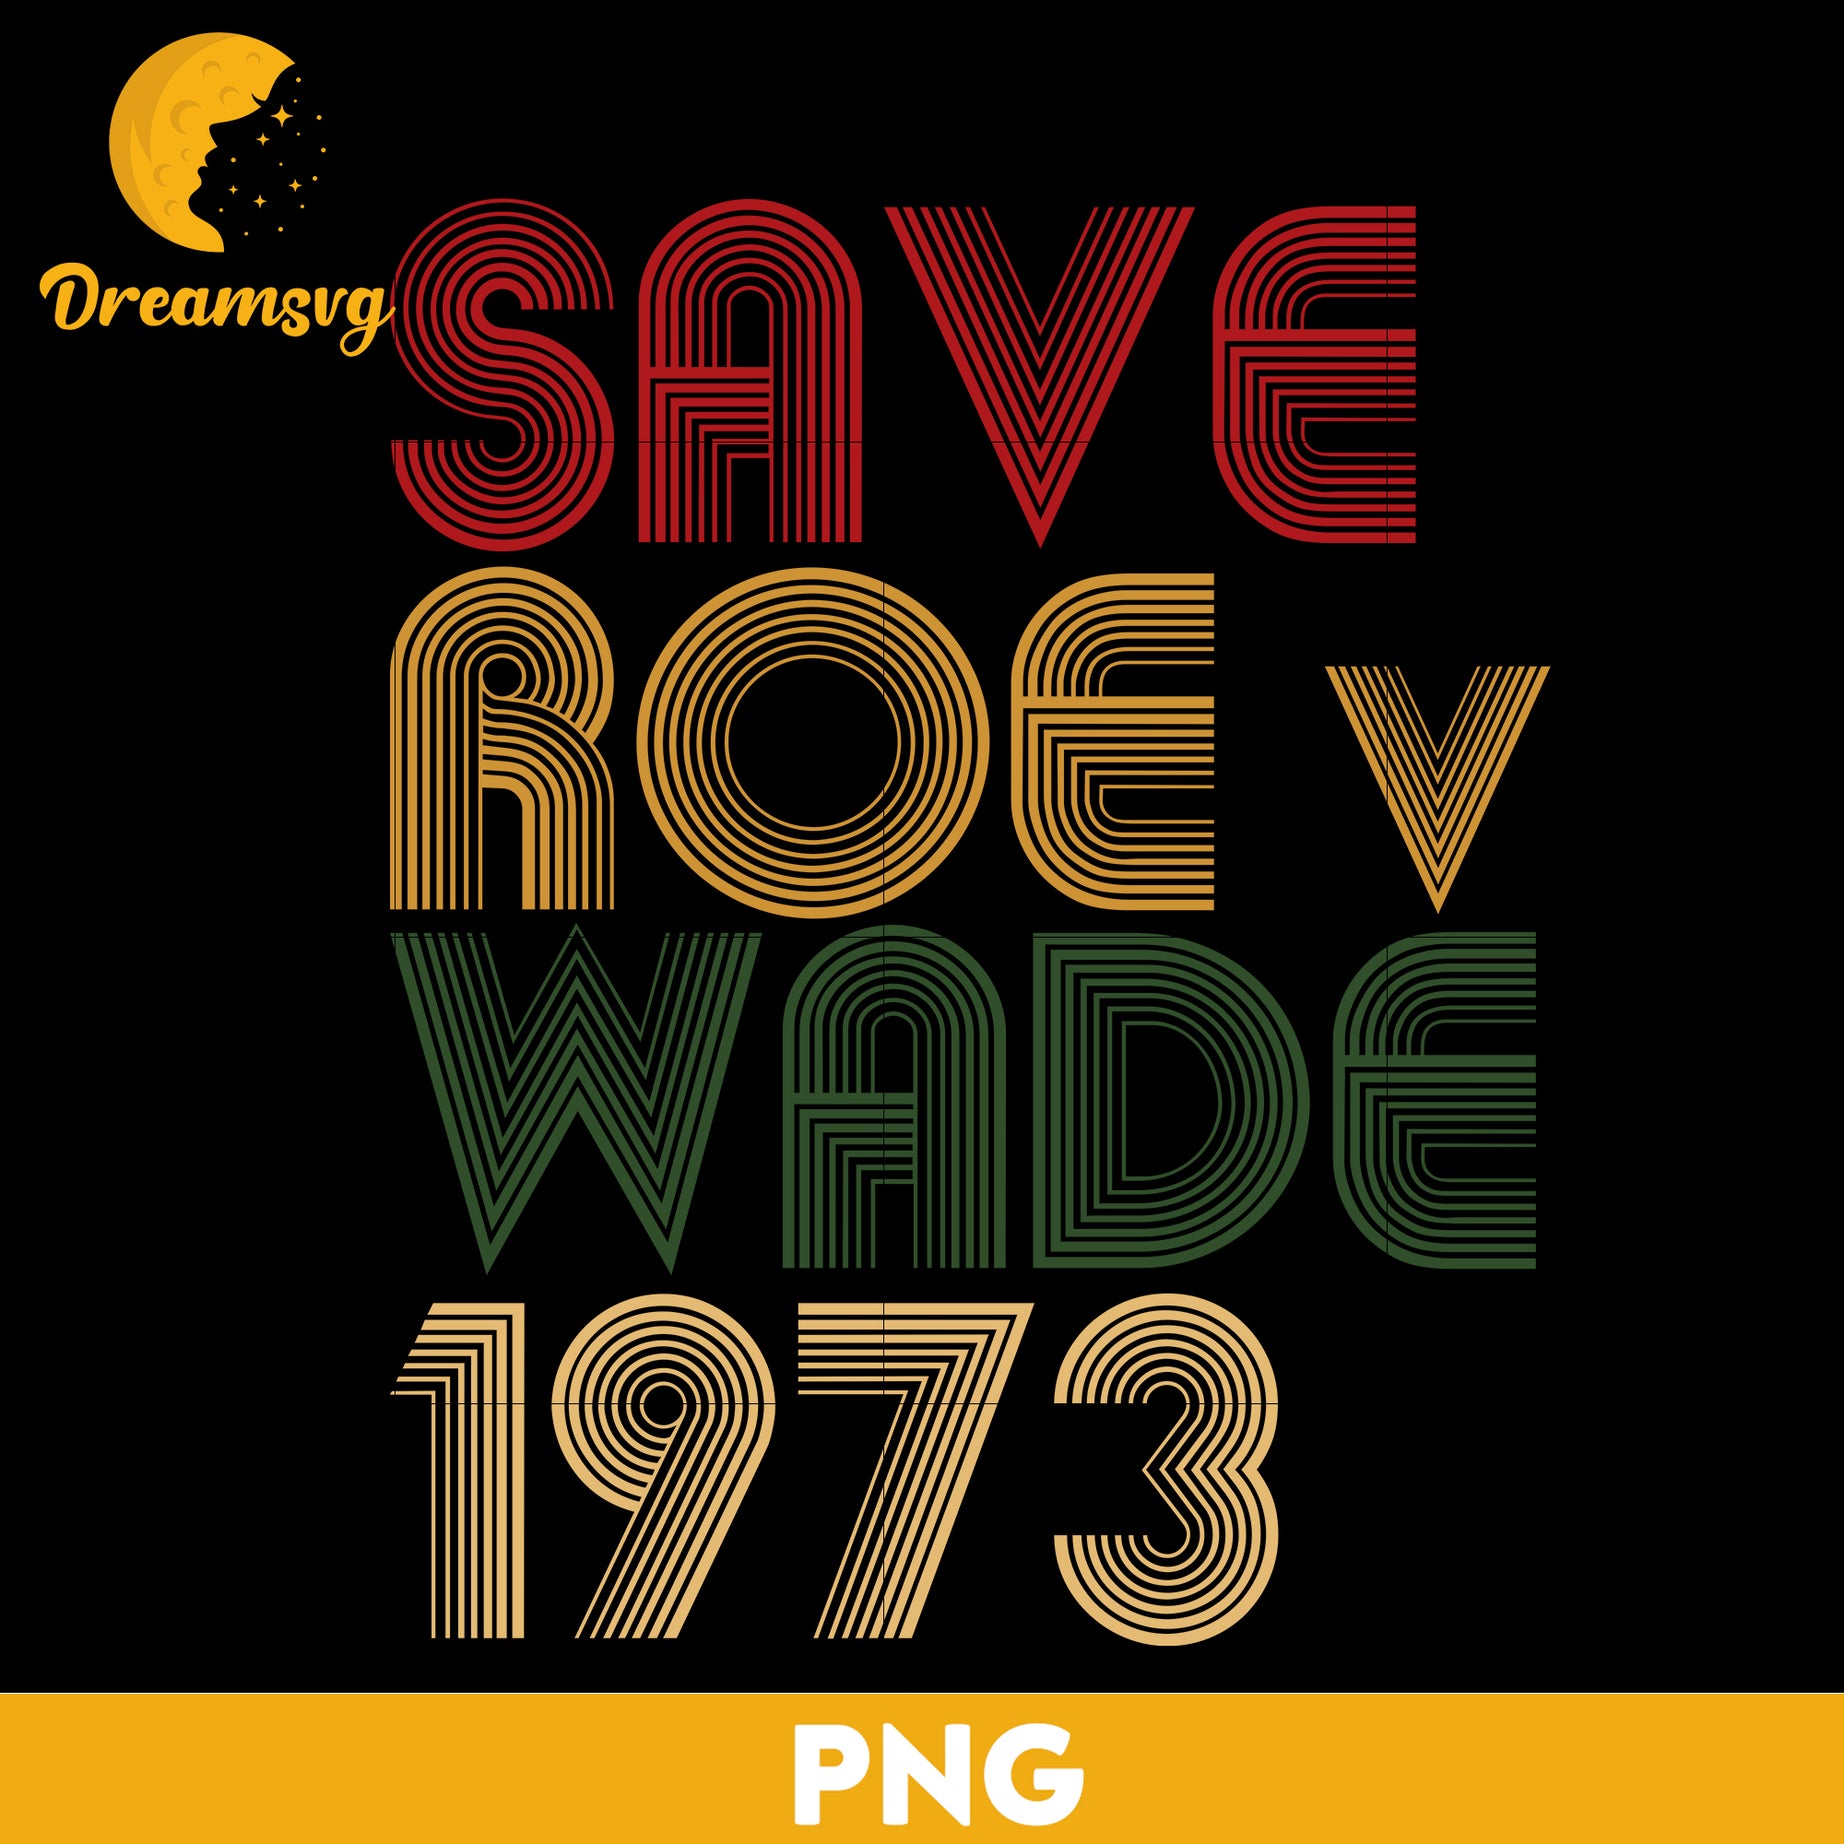 Save Roe V Wade 1973 PNG, Trending PNG, PNG file, Digital file.